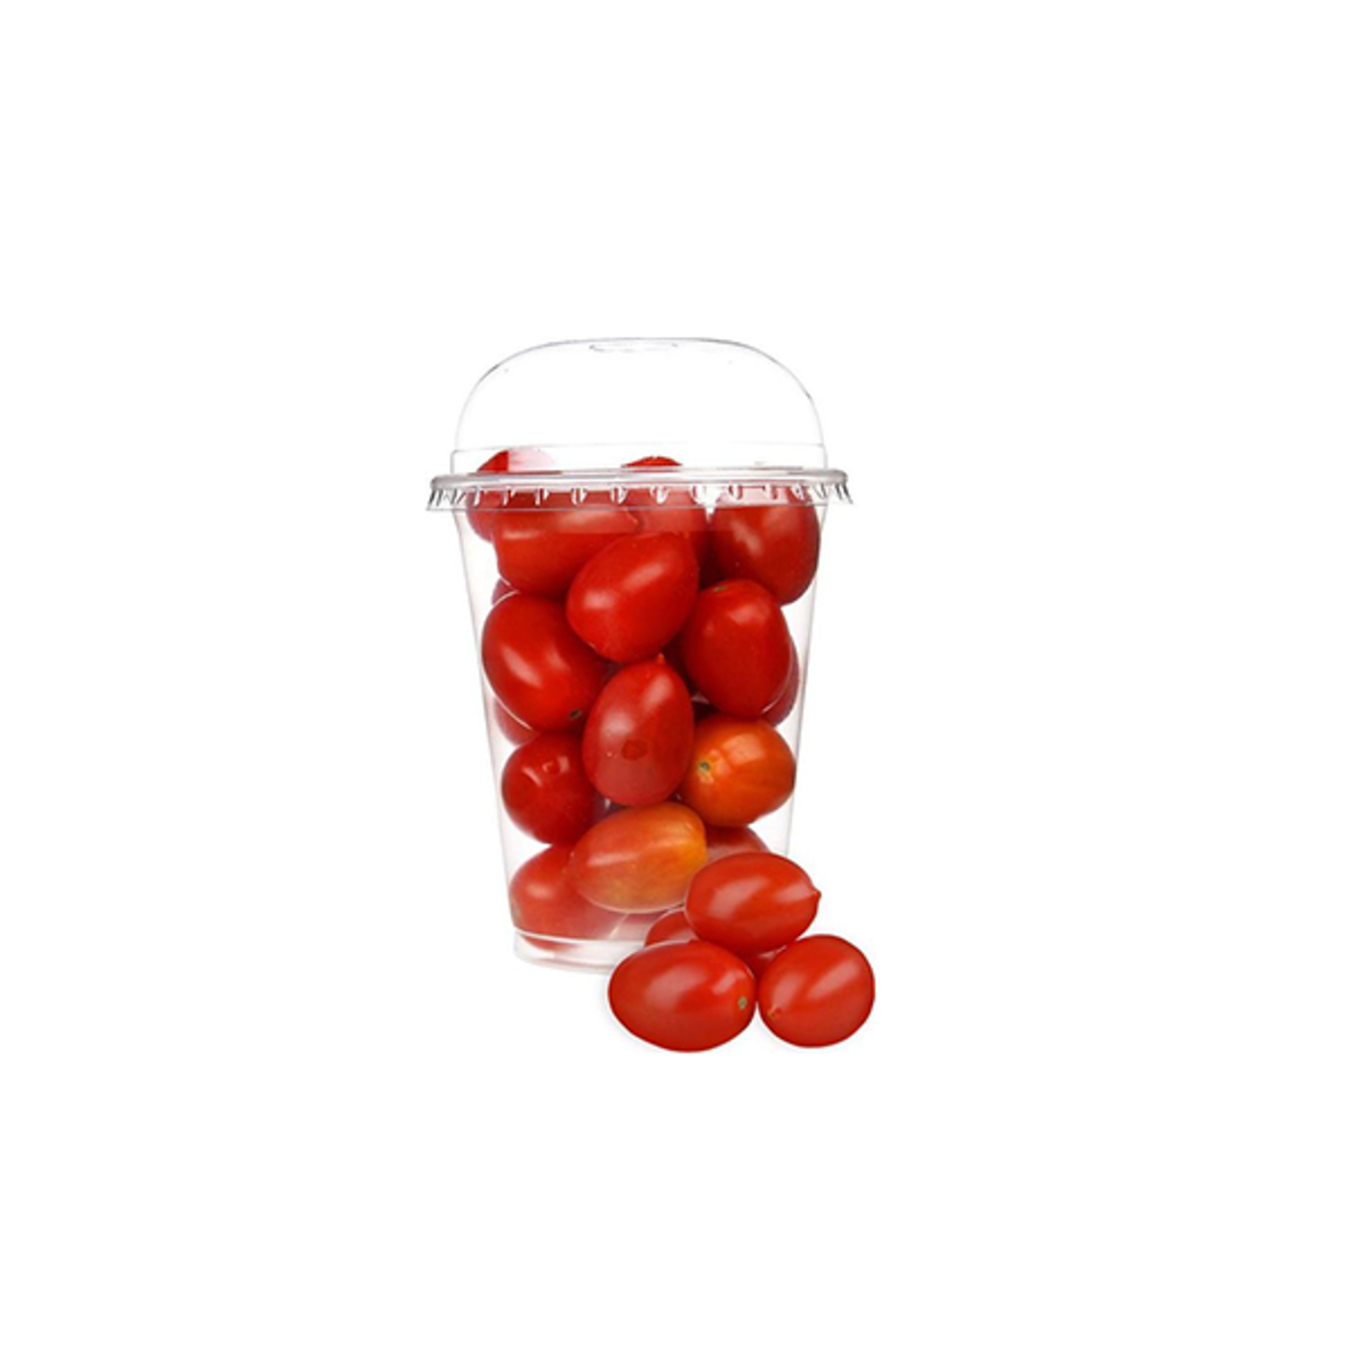 Cherry Plum Red Tomatoes 250g